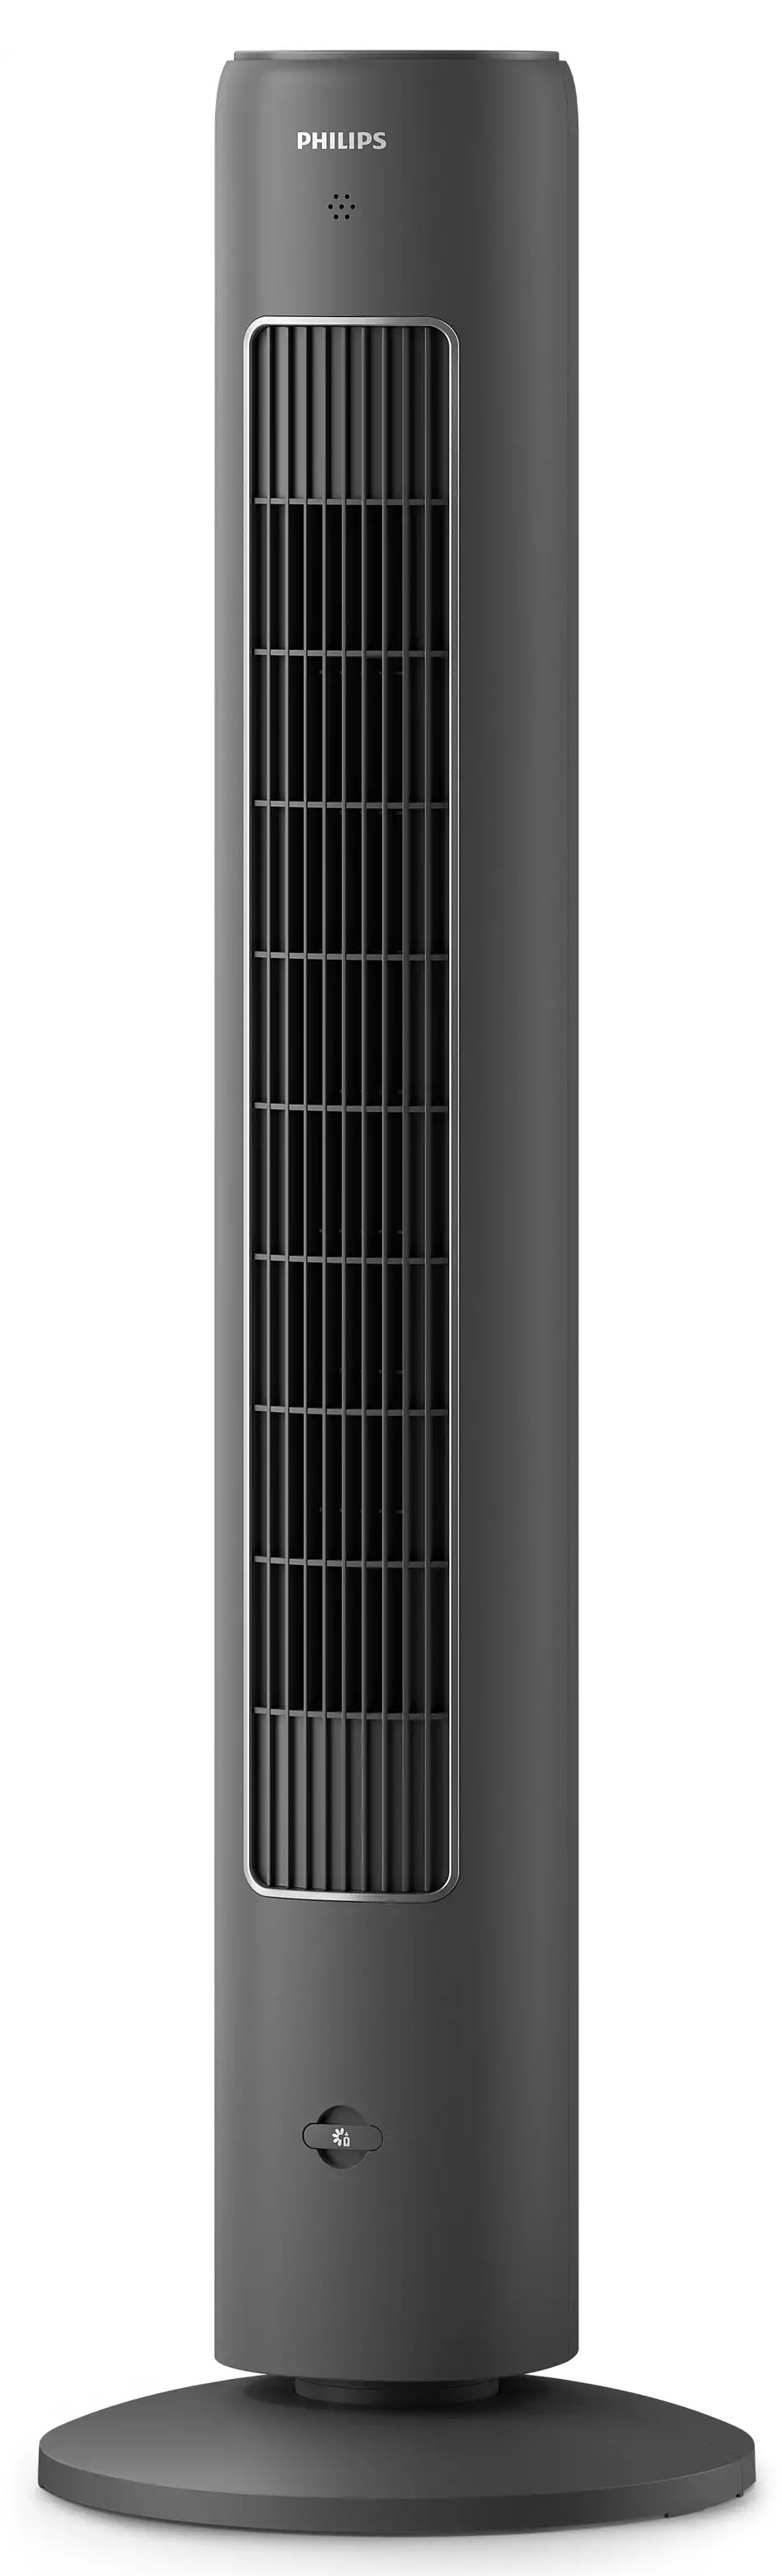 Цена вентилятор Philips CX5535/11 в Киеве